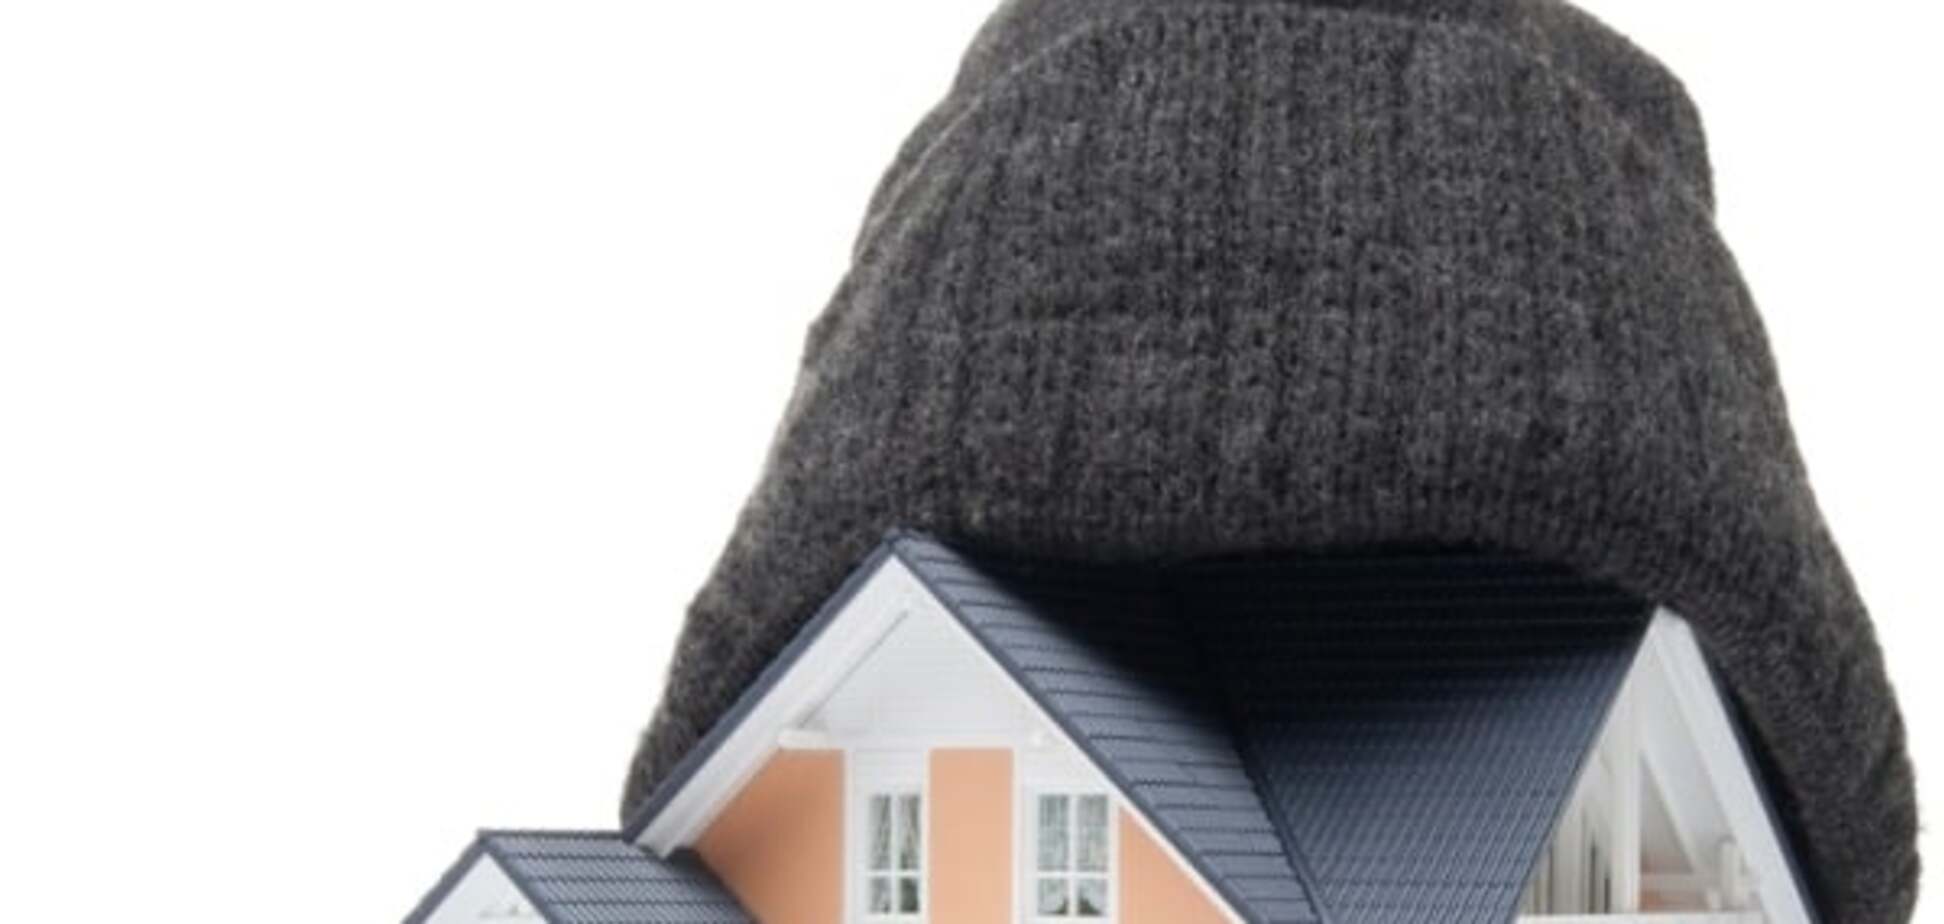  Эксперты посоветовали, как утеплить дом без помощи государства